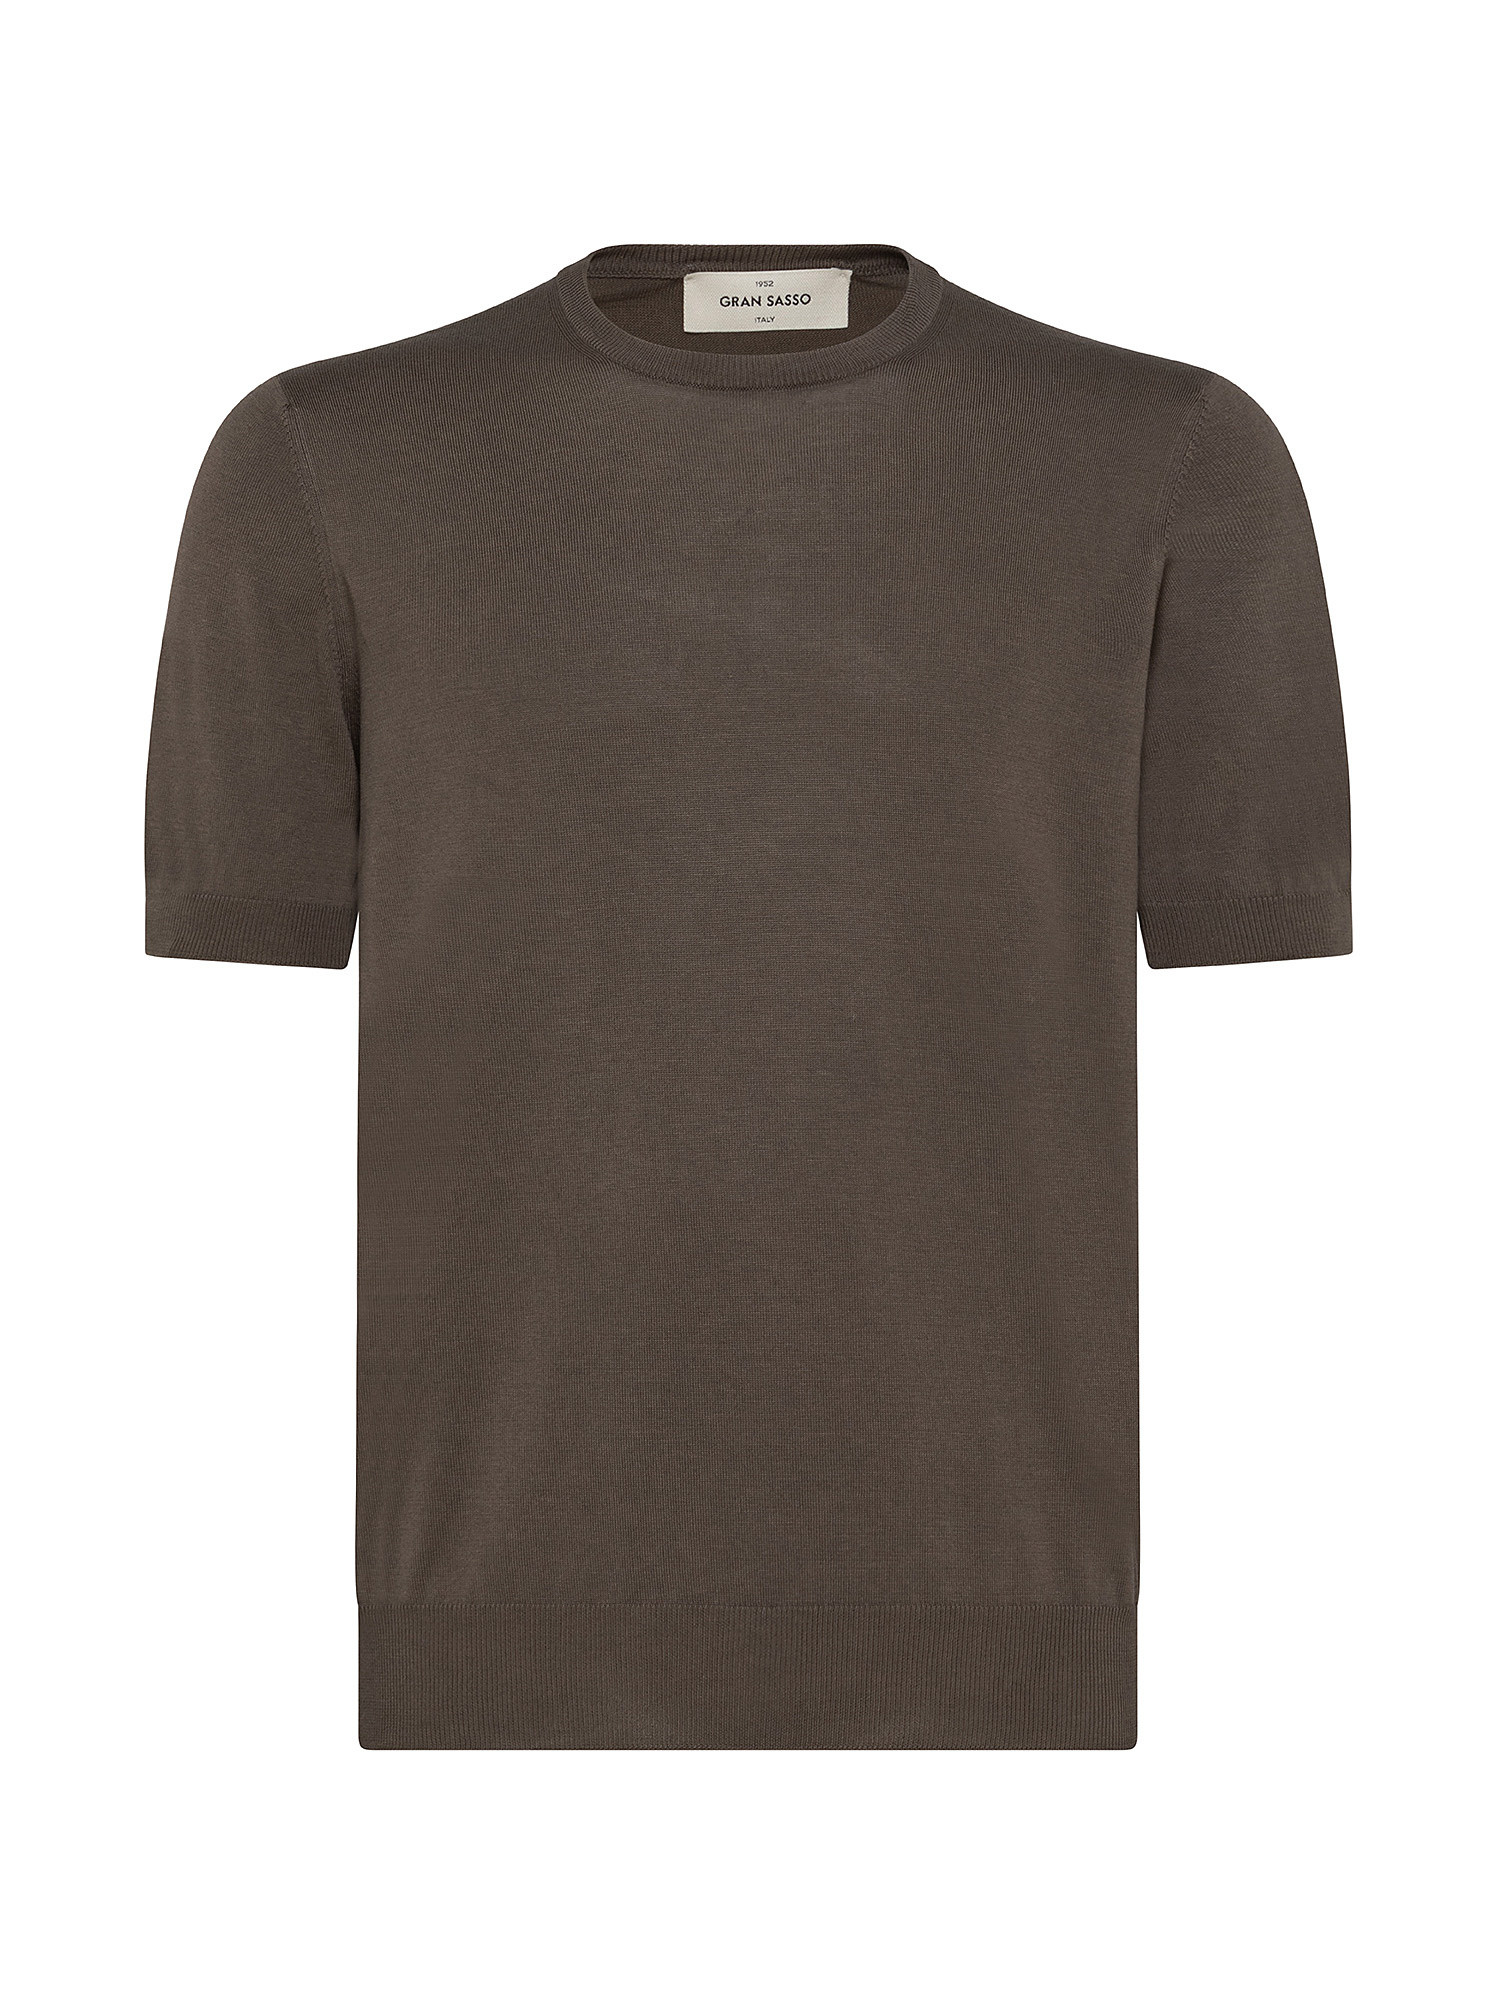 T-shirt in maglia a maniche corte in sottile cotone organico biologico effetto Vintage, Marrone, large image number 0